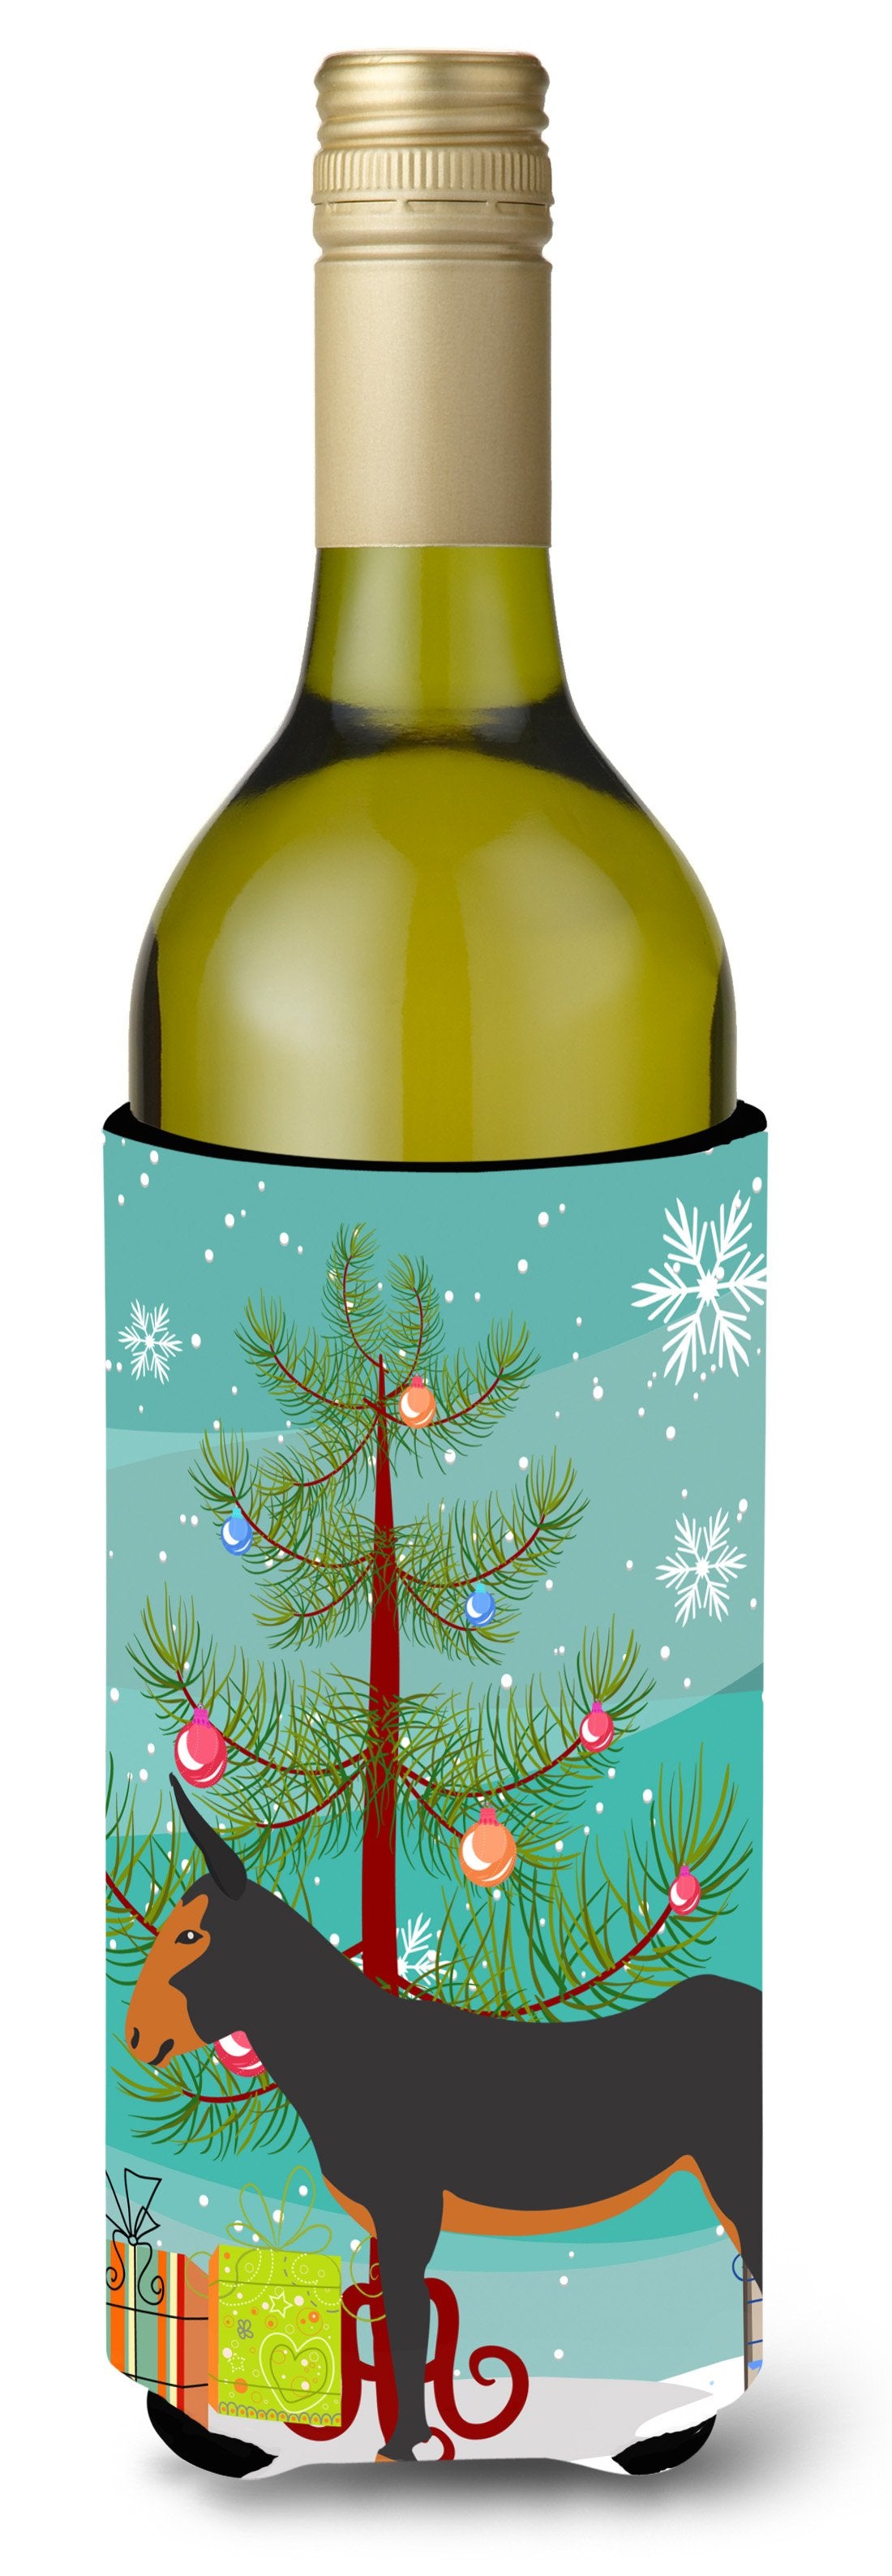 Catalan Donkey Christmas Wine Bottle Beverge Insulator Hugger BB9222LITERK by Caroline's Treasures